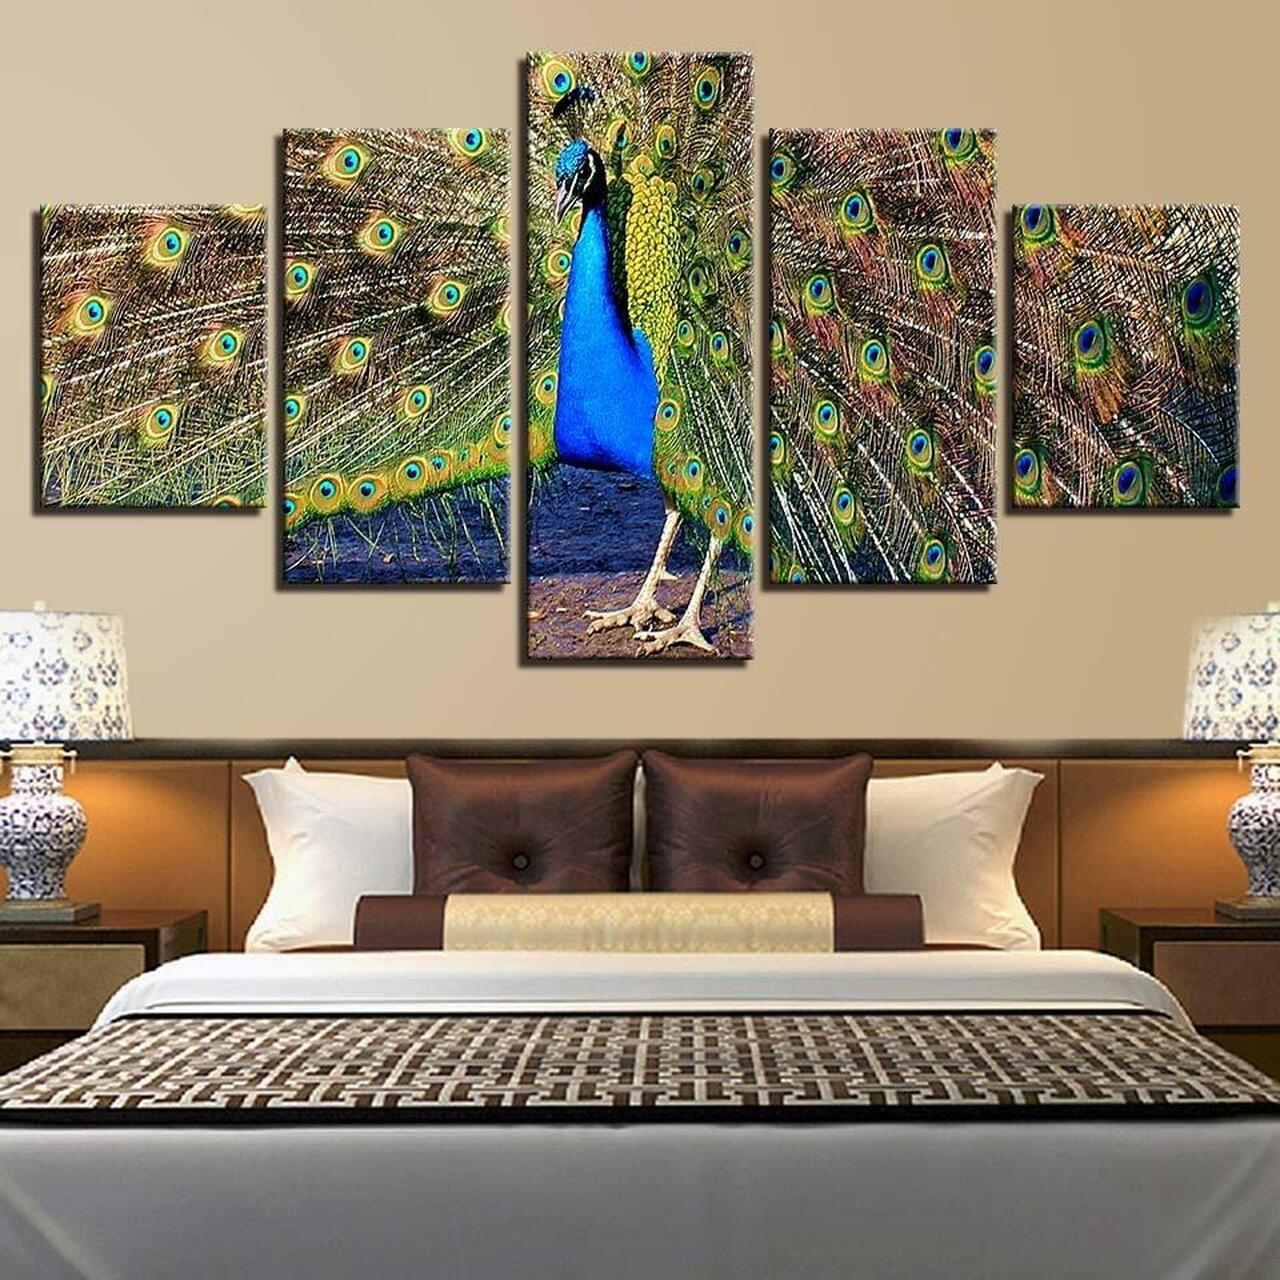 peacock spreads tail 5 pices peinture sur toile impression sur toile toile art pour la dcoration intrieuremoyme